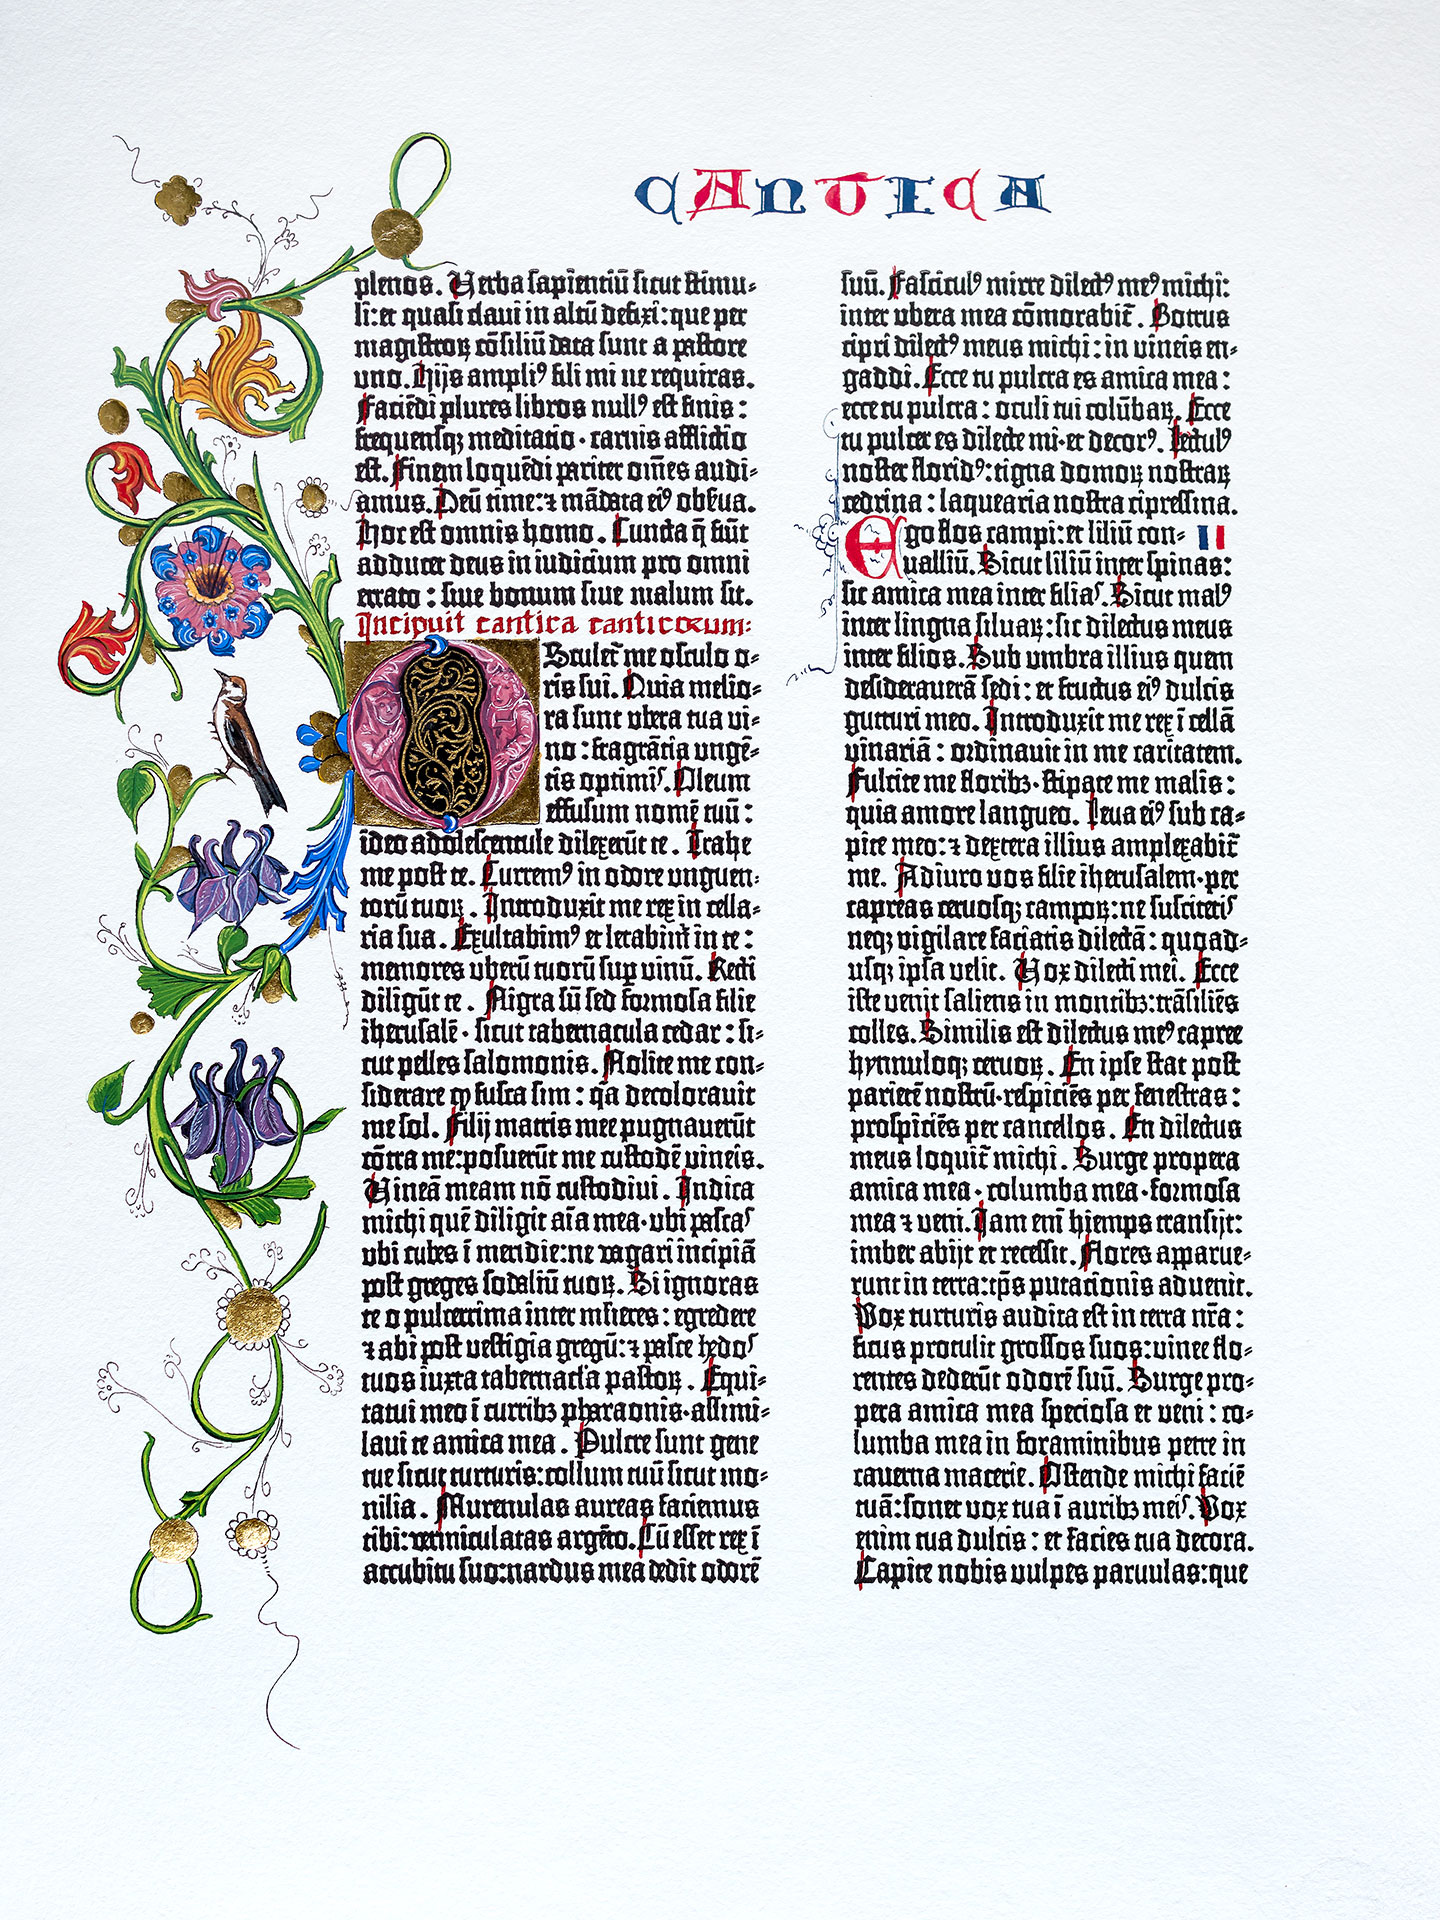 Das Hohelied. Prachtseite Berliner Gutenberg-Bibel